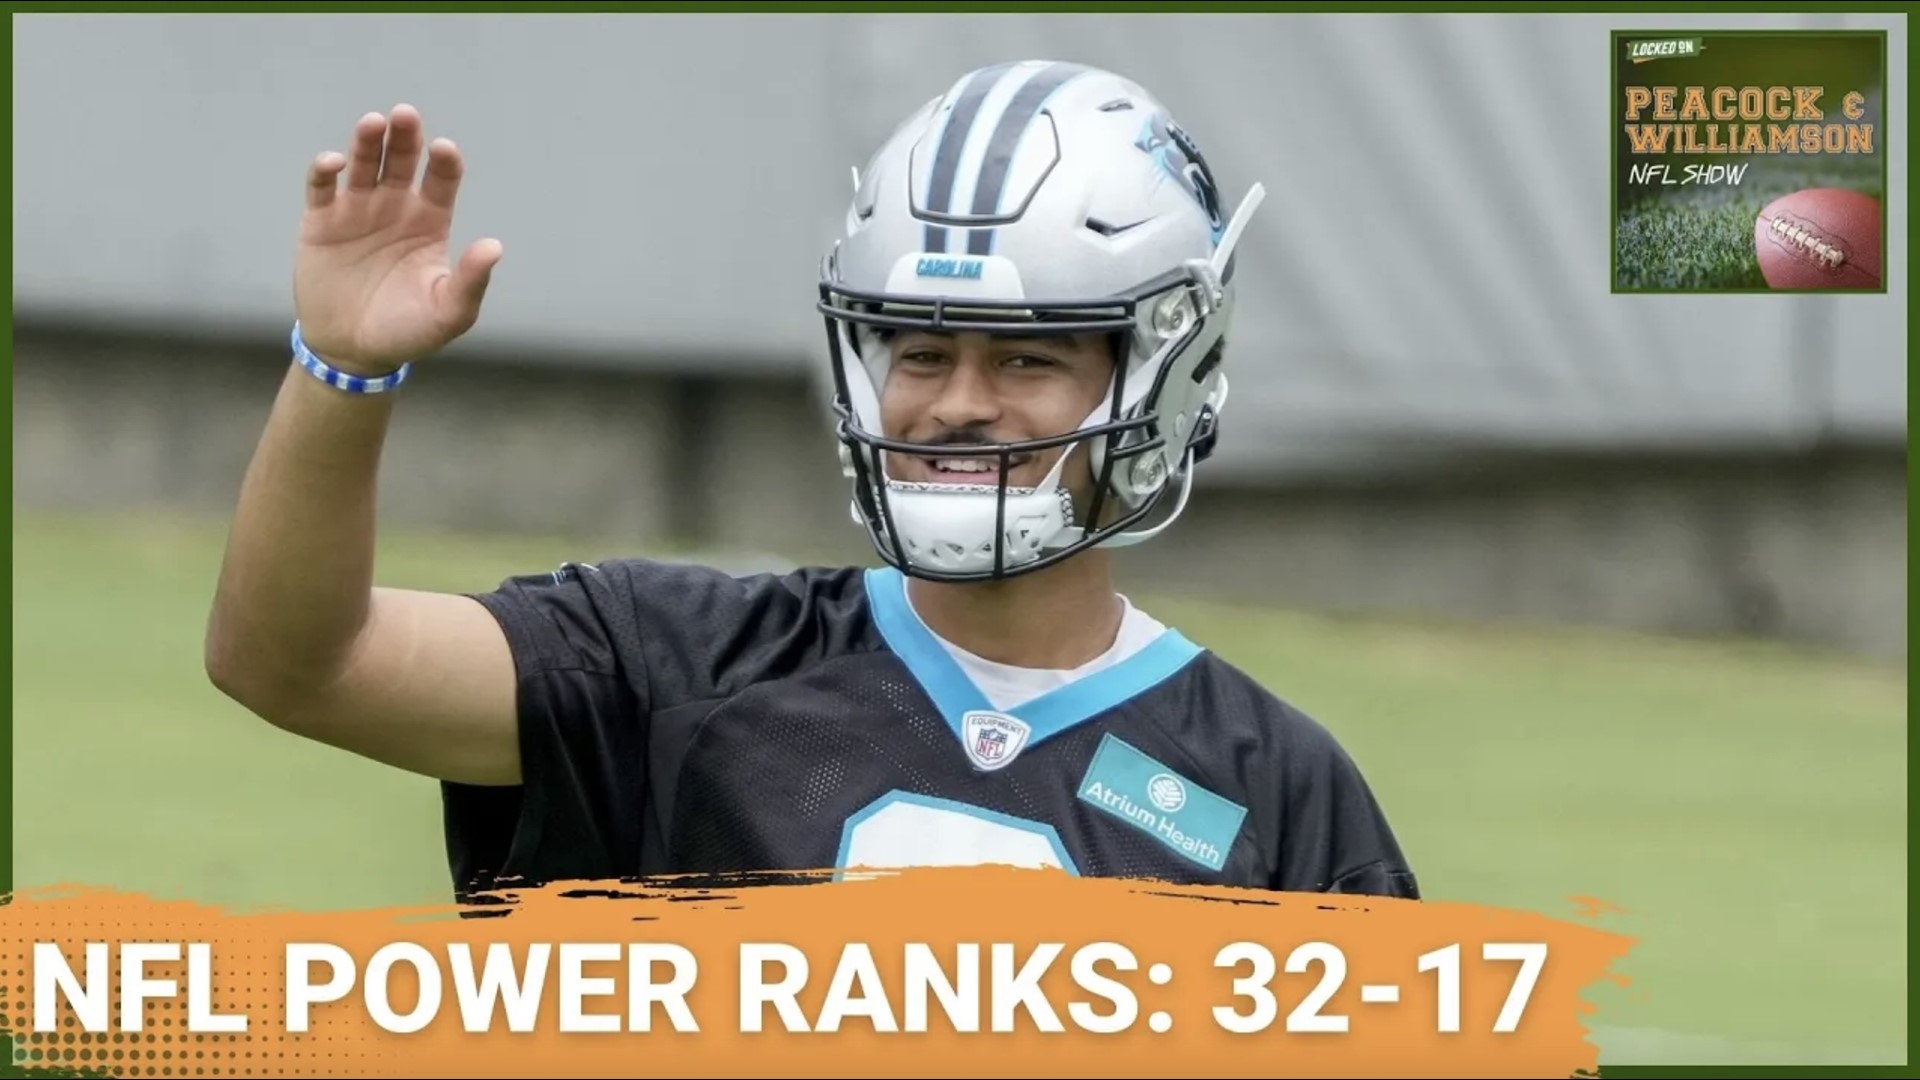 NFL Preseason Power Rankings Teams 32-17